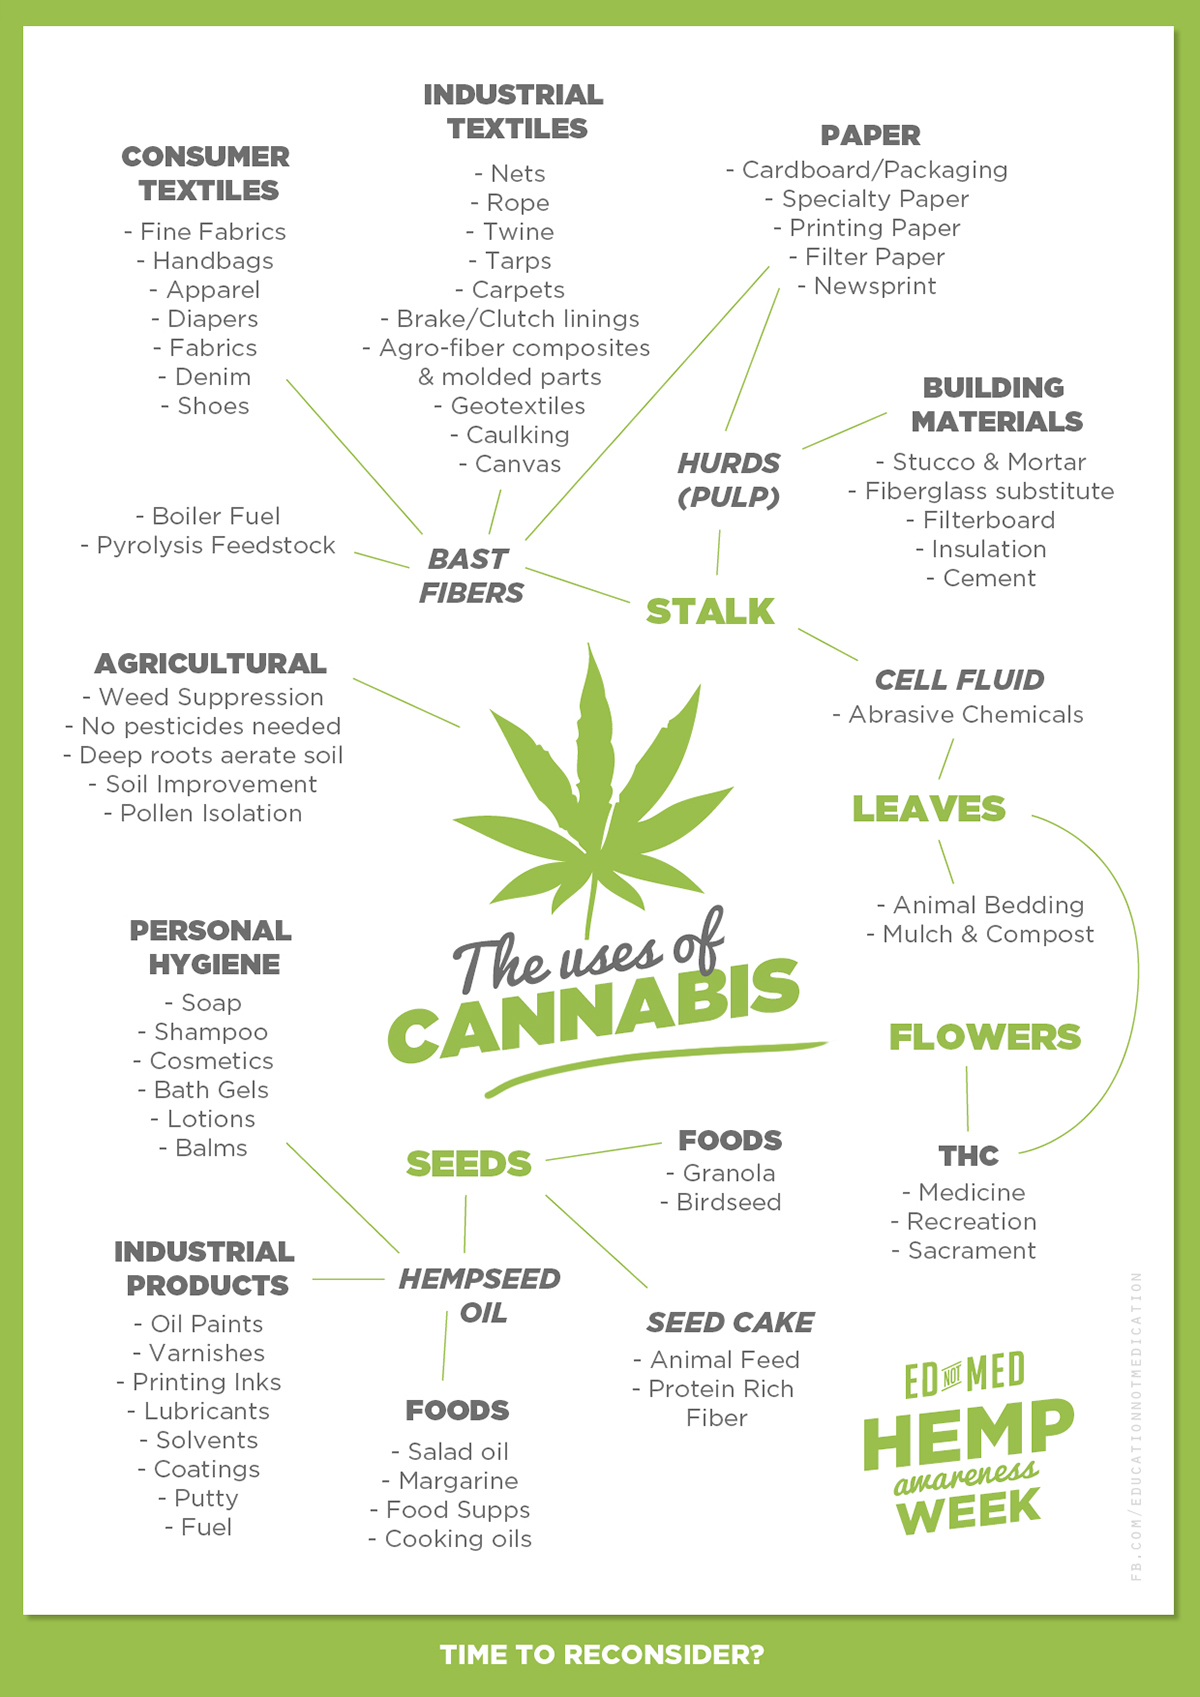 hemp cannabis awareness marijuana EdnotMed Education not Medication